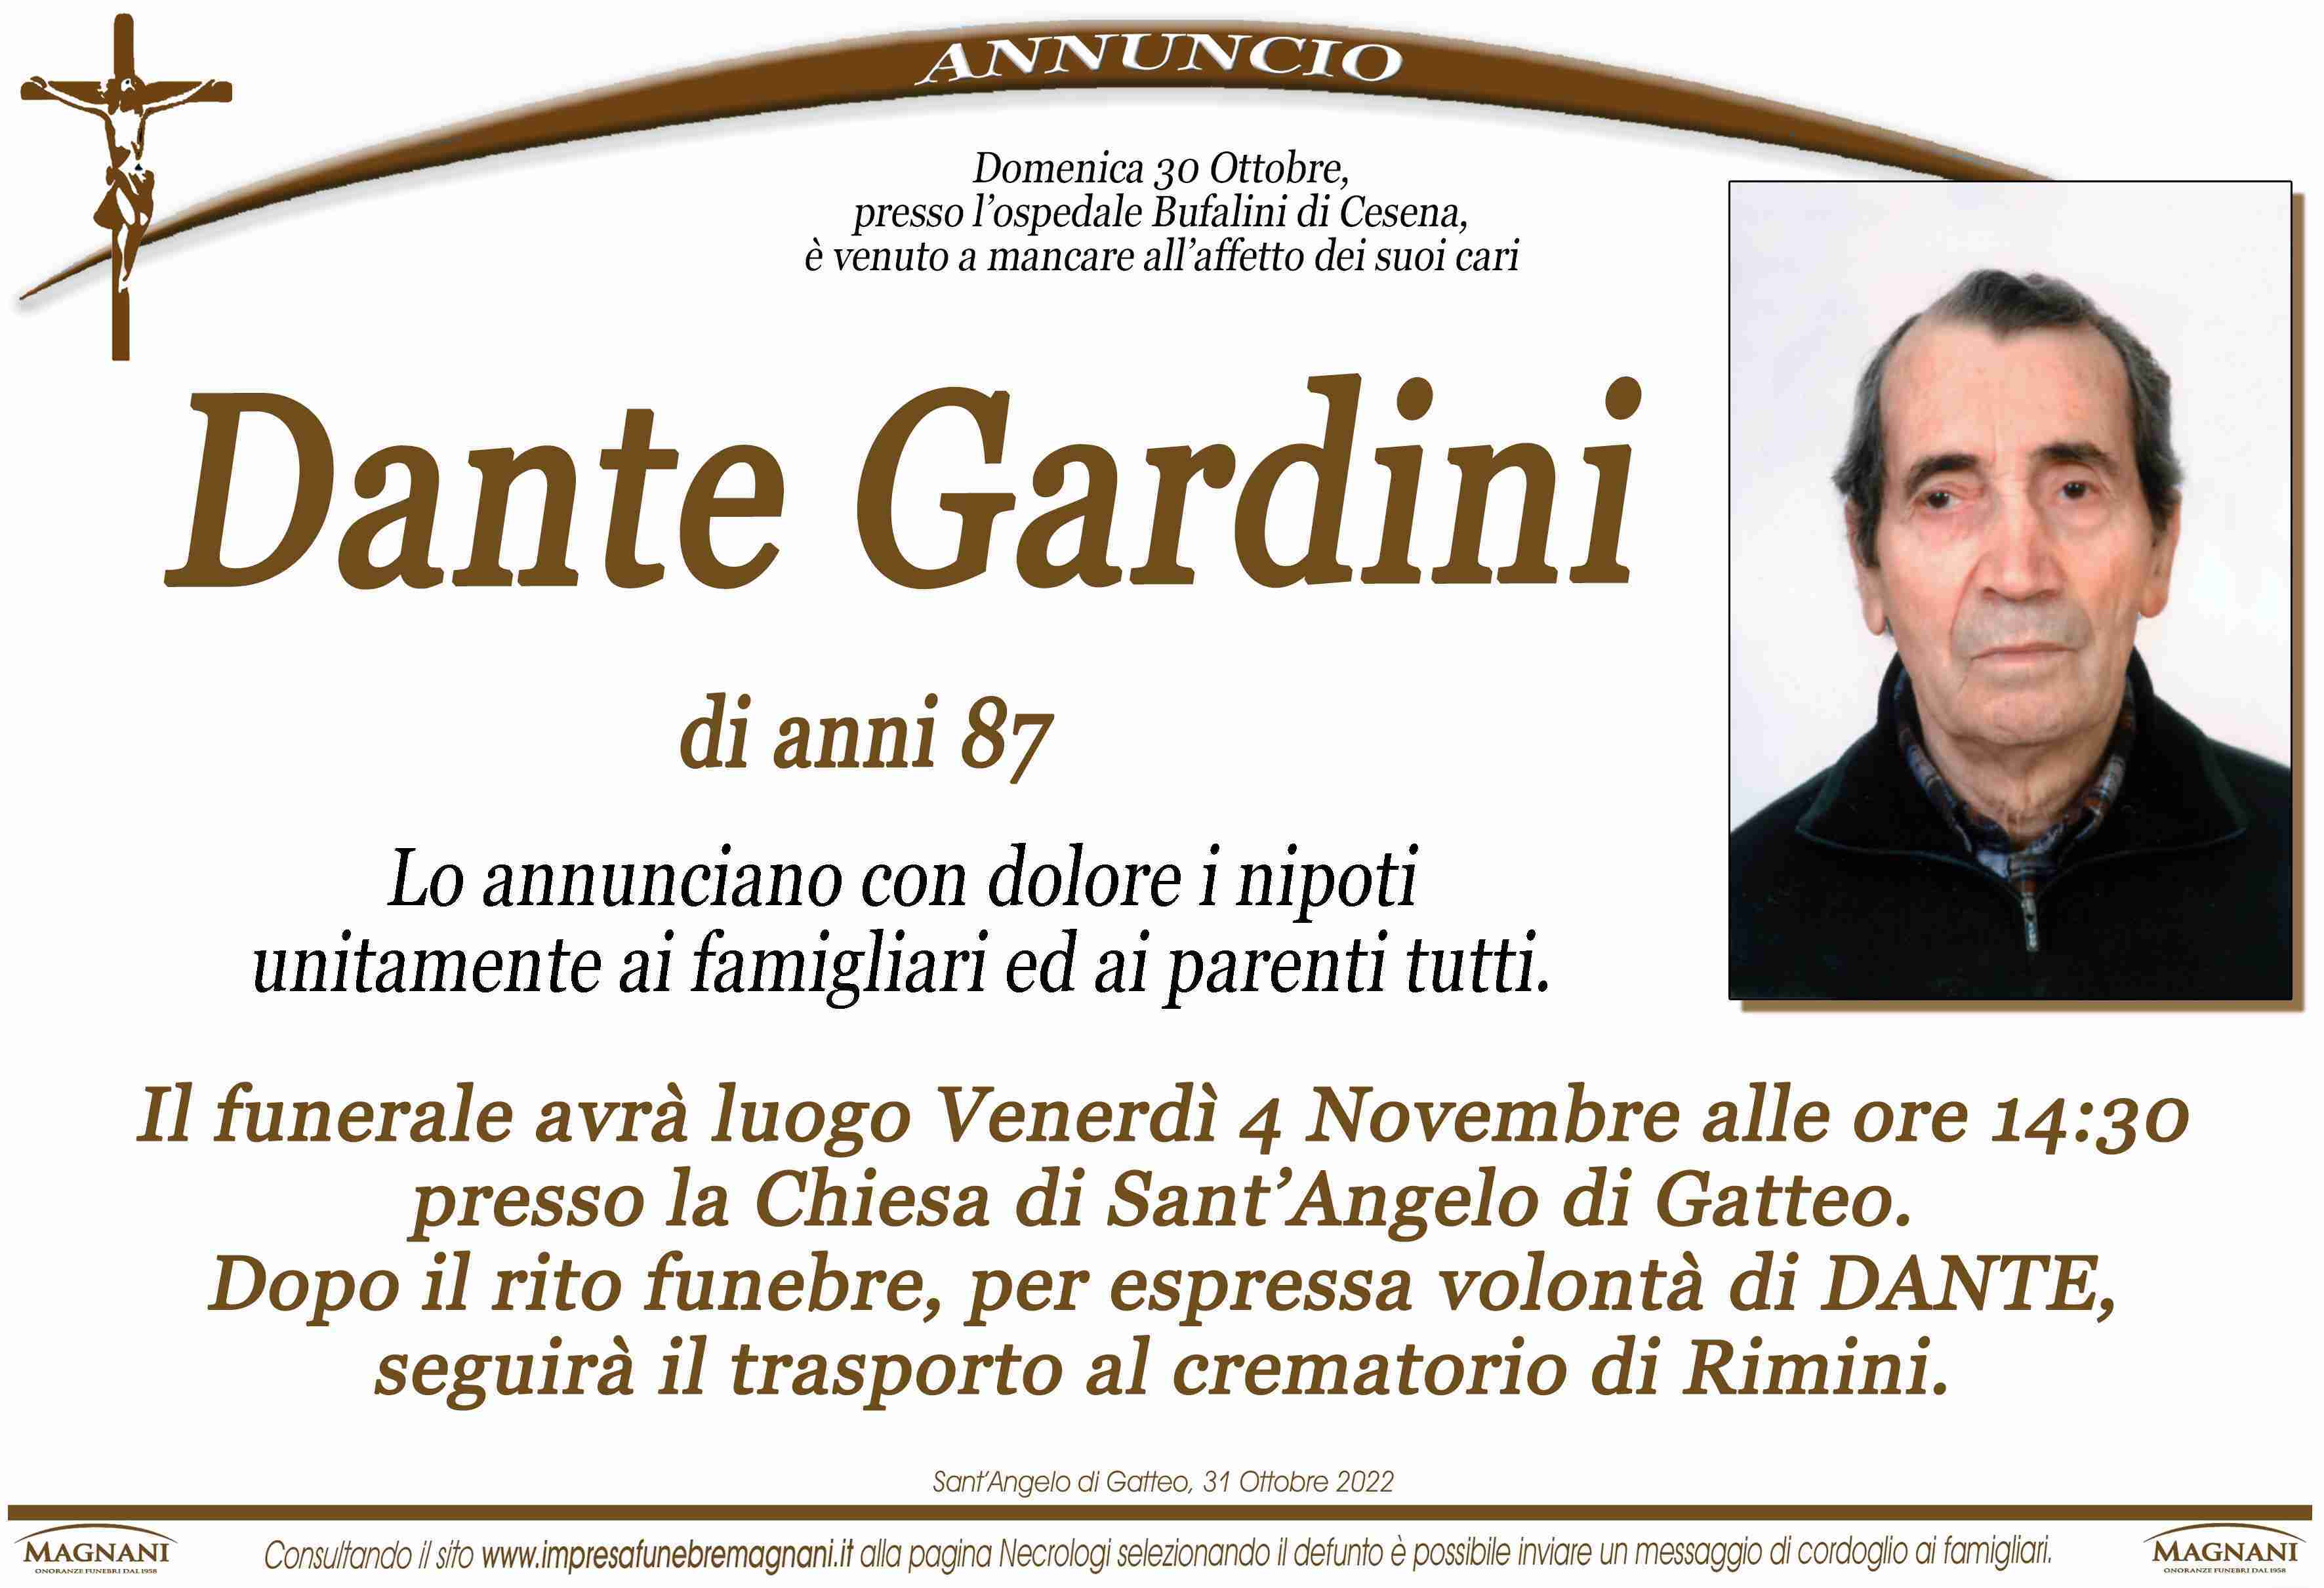 Dante Gardini